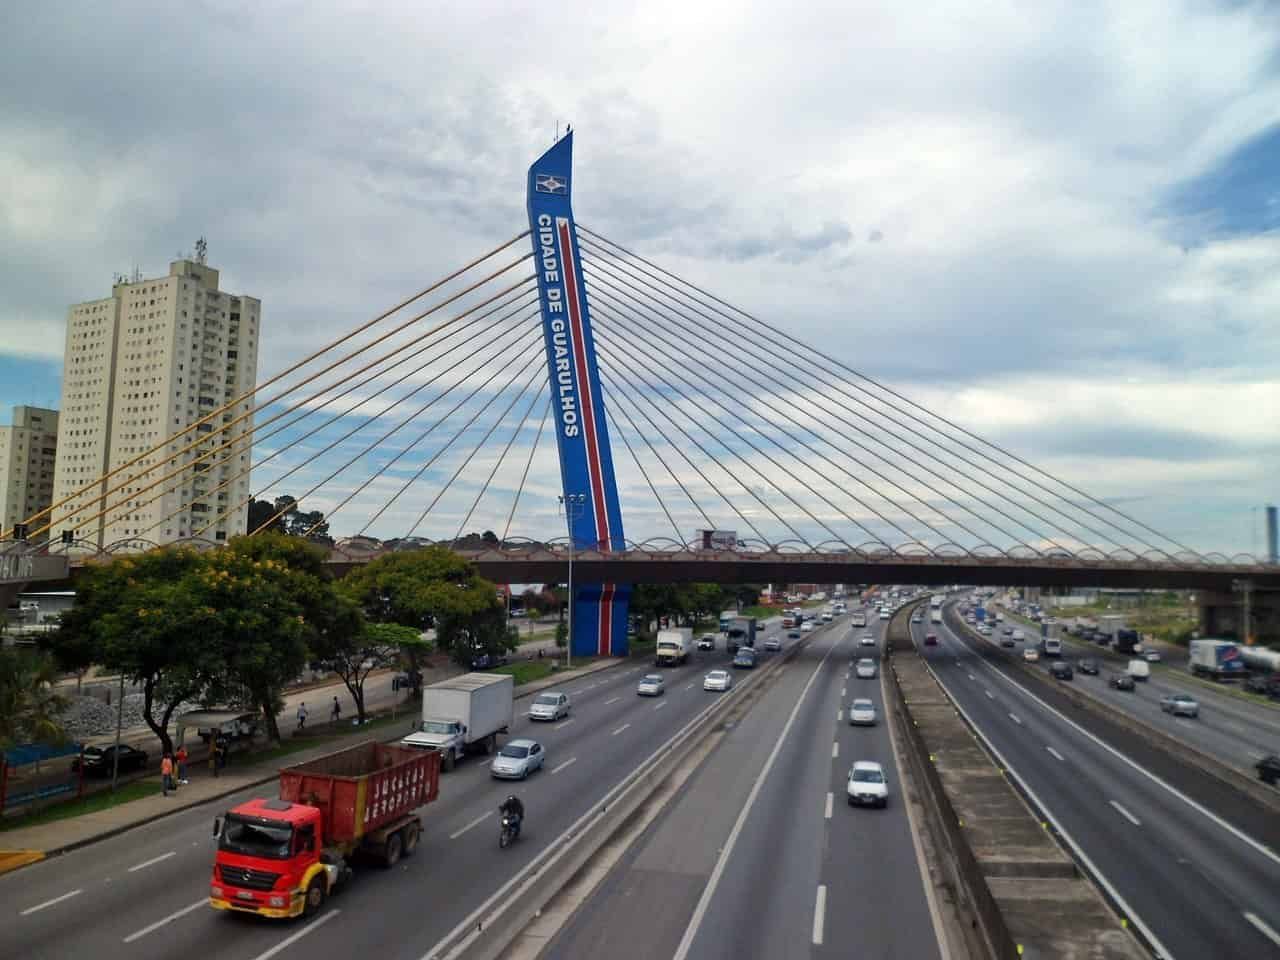 Vista da ponte estaiada, localizada na entrada de Guarulhos. A cidade hoje, possui diversas escolas, desde o ensino infantil até o ensino médio.